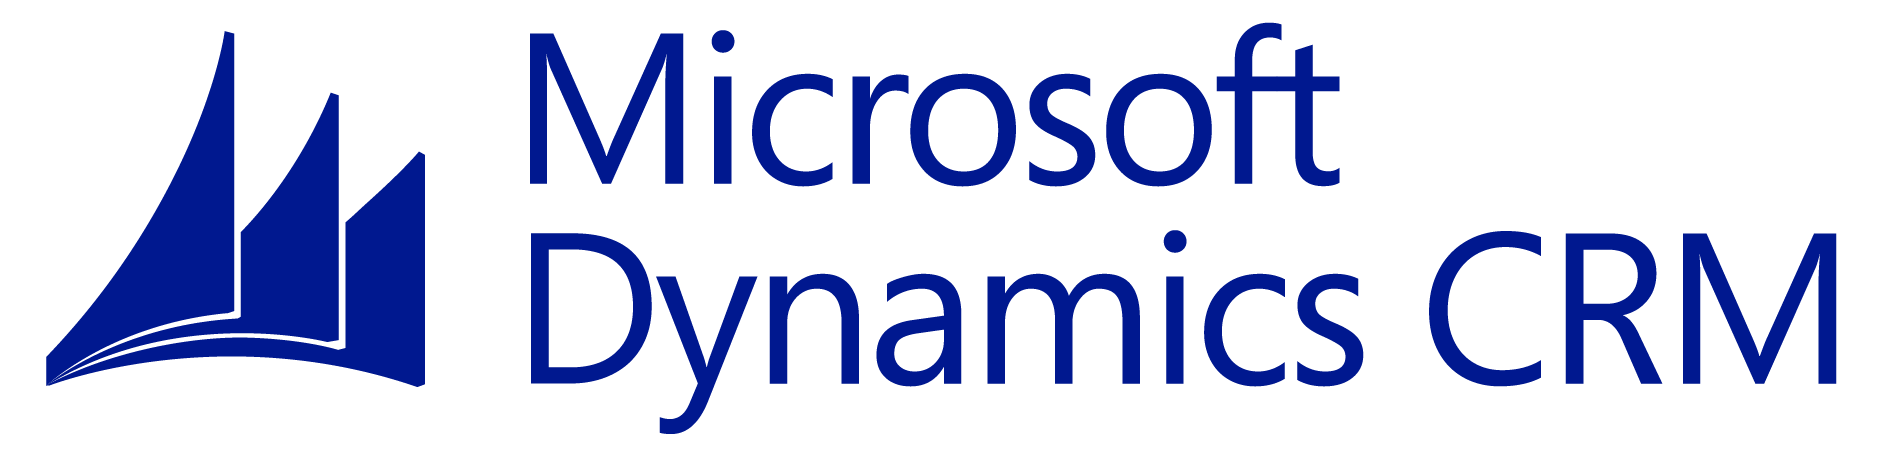 MS Dynamics Logo - Microsoft dynamics Logos